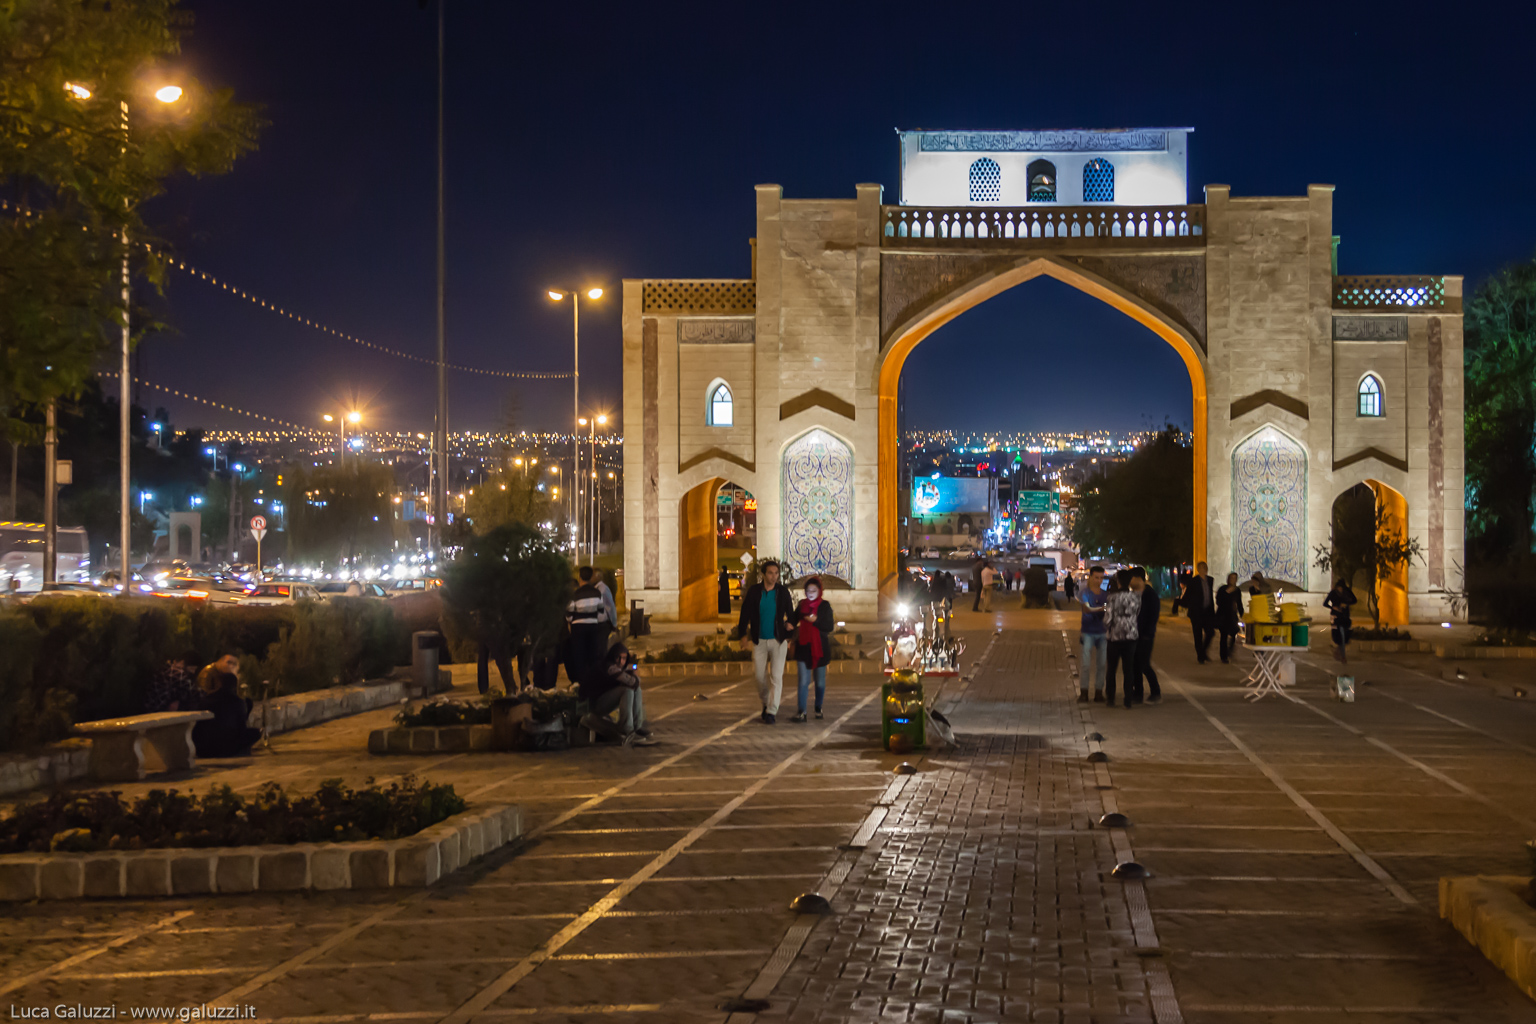 Porta del Corano (Darvāzeh Qur'an), Shiraz